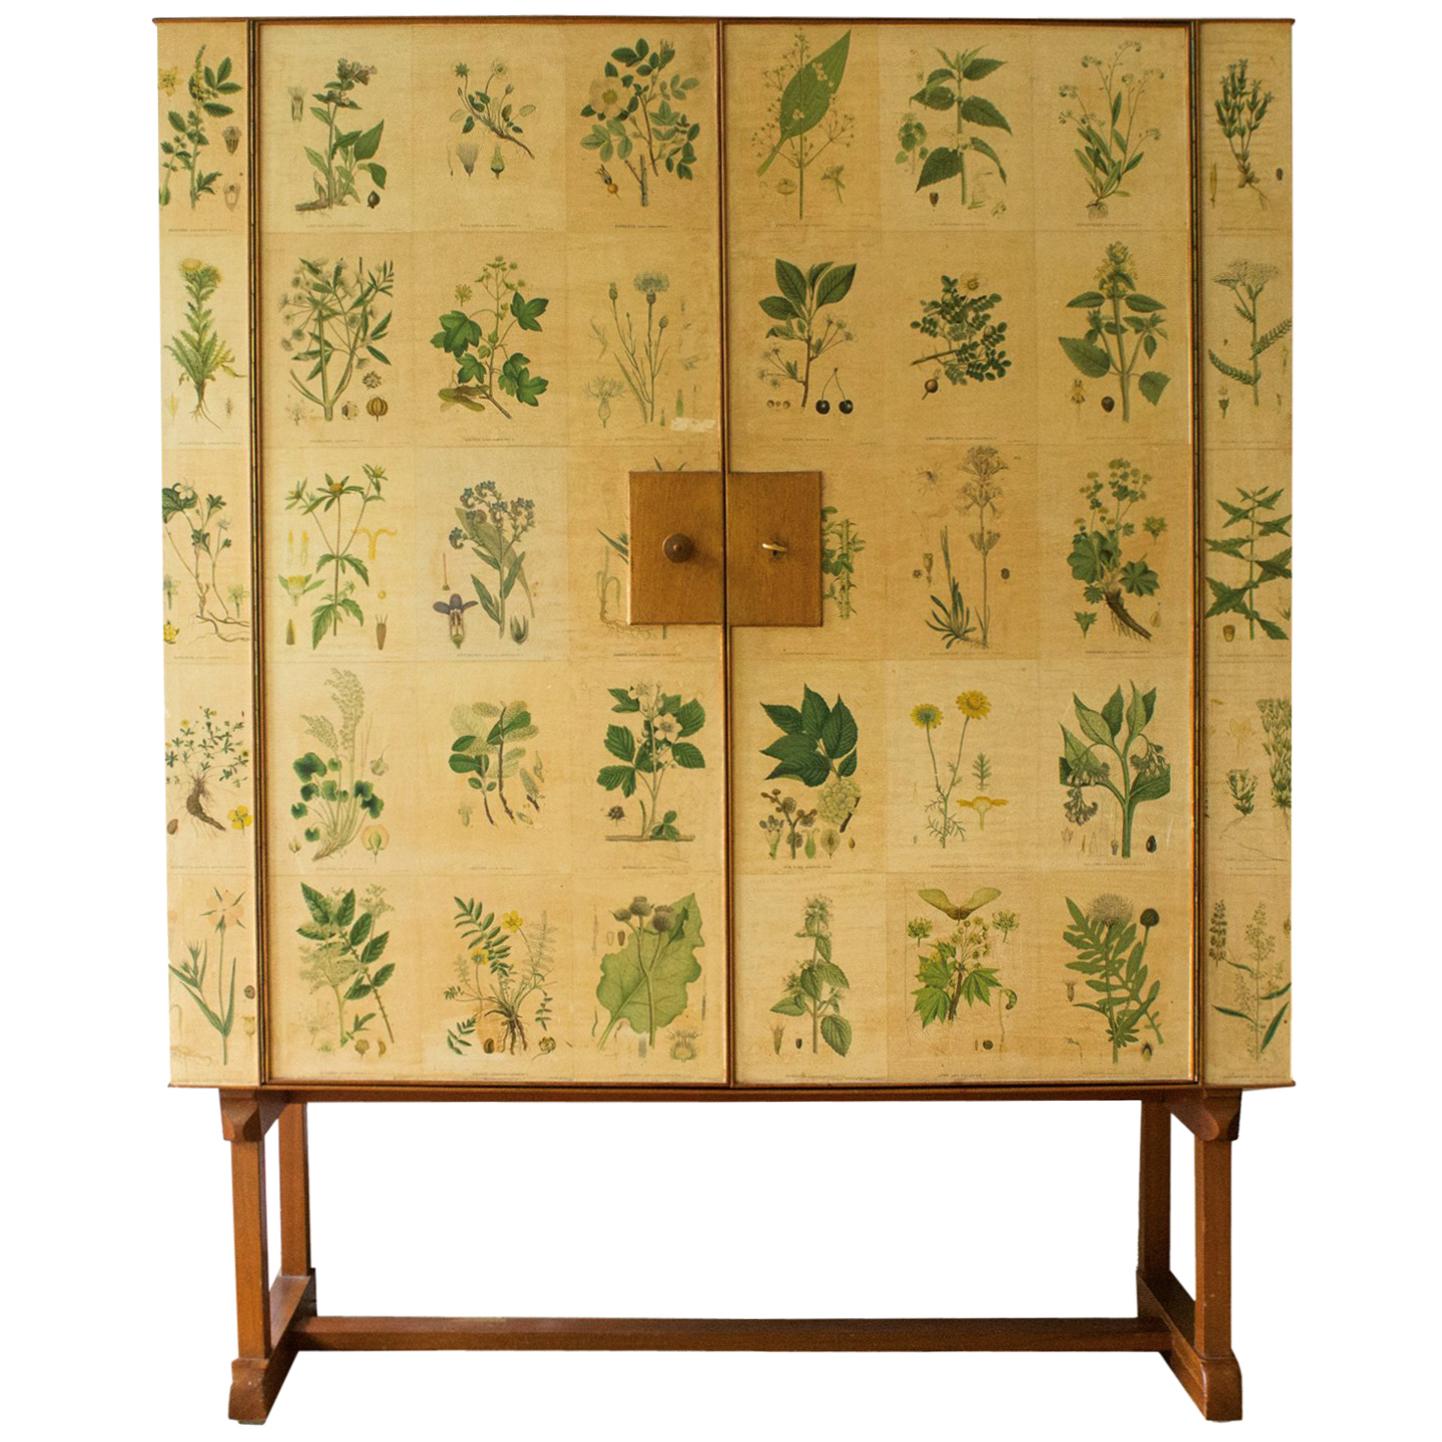 Vintage Flora Cabinet by Josef Frank, 1950s, Number 852